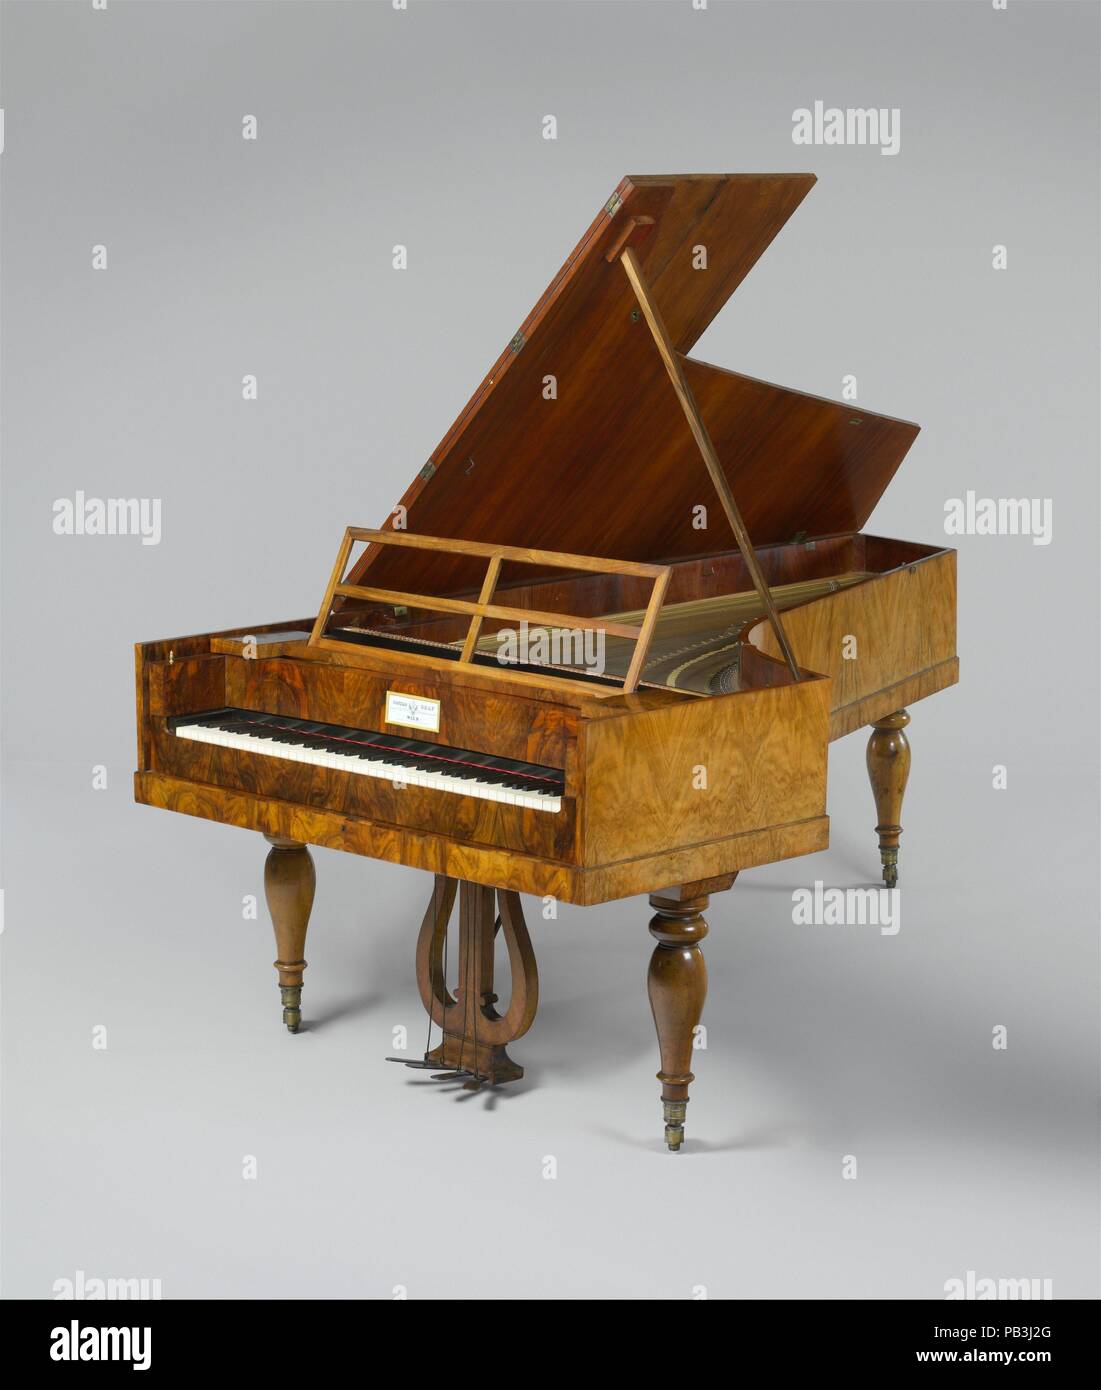 Pianoforte. Culture : l'autrichienne. Dimensions : largeur : 49 3/16 po.  (125 cm) Longueur : 93 1/2 po. (237,5 cm). Bouilloire : Conrad Graf ( autrichienne, Riedlinger, Wurtemberg 1782-1851 Vienne). Date : ca.